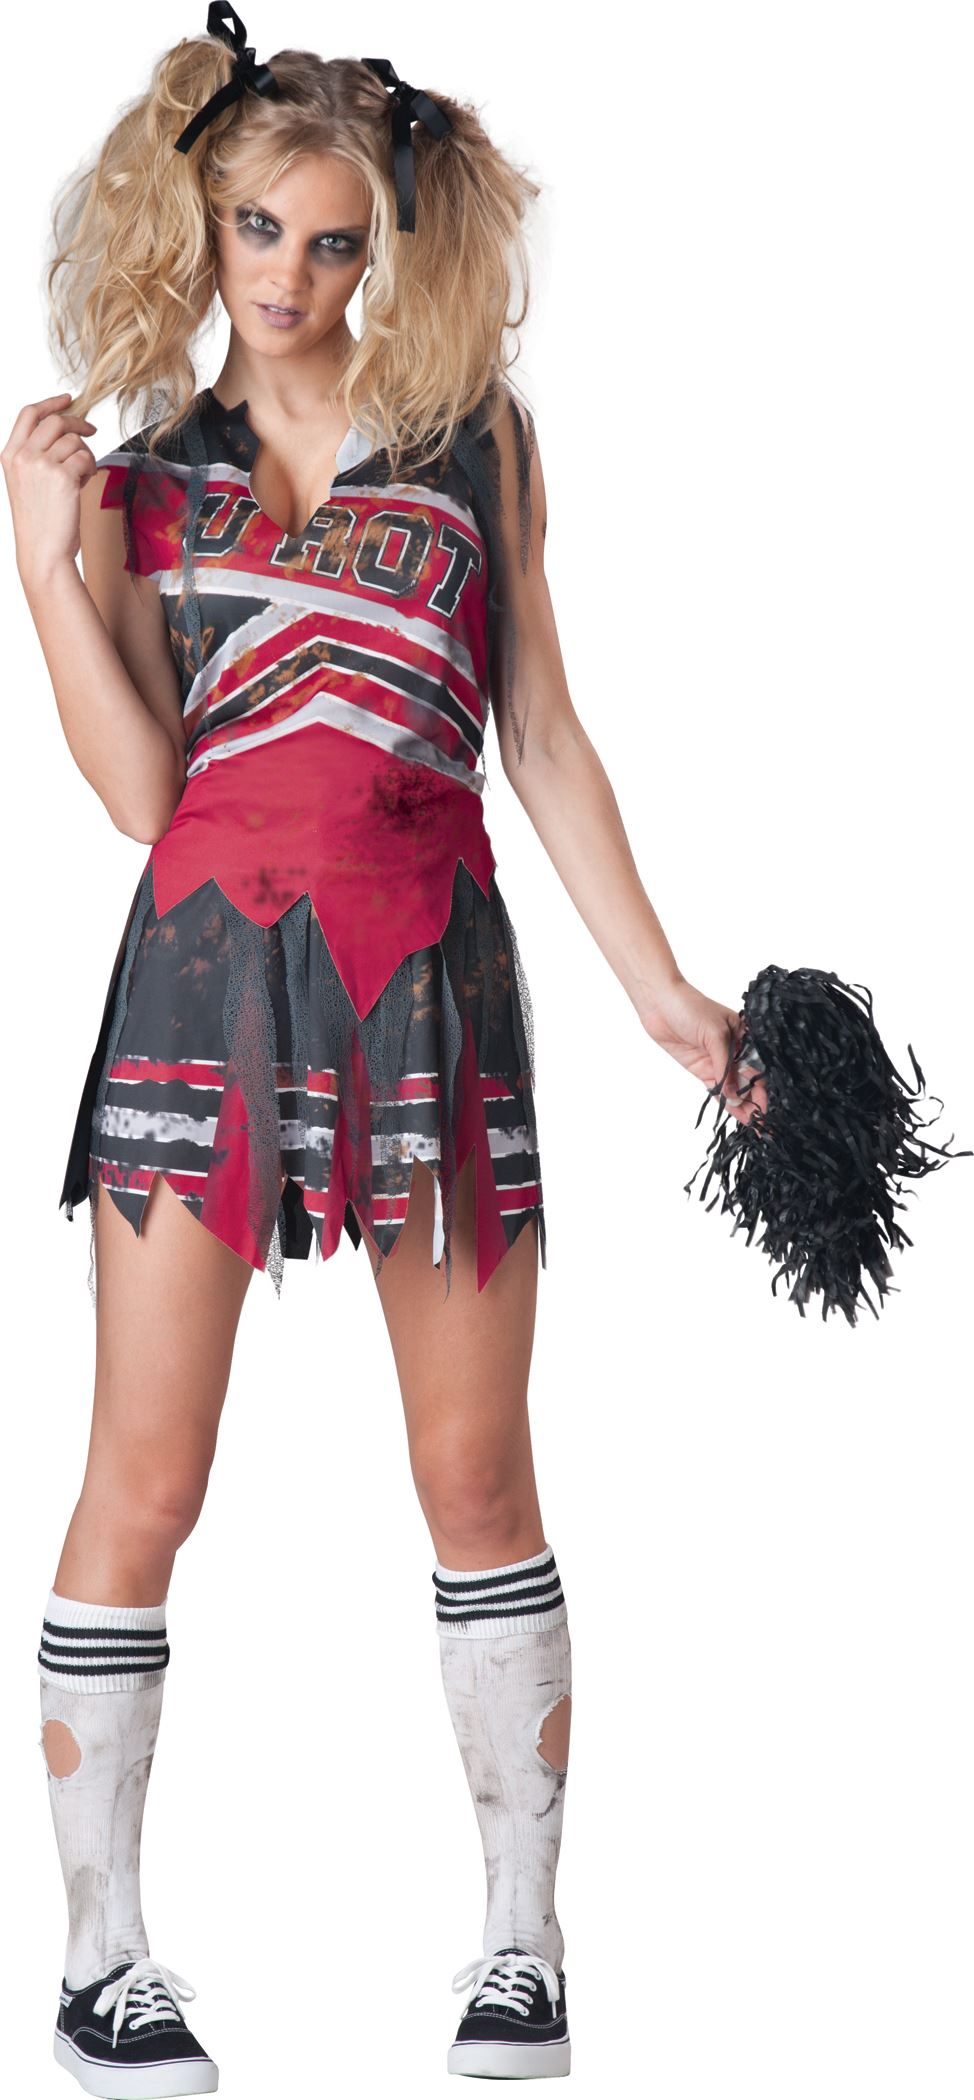 Adult Spiritless Zombie Cheerleader Women Costume 4199 The Costume Land